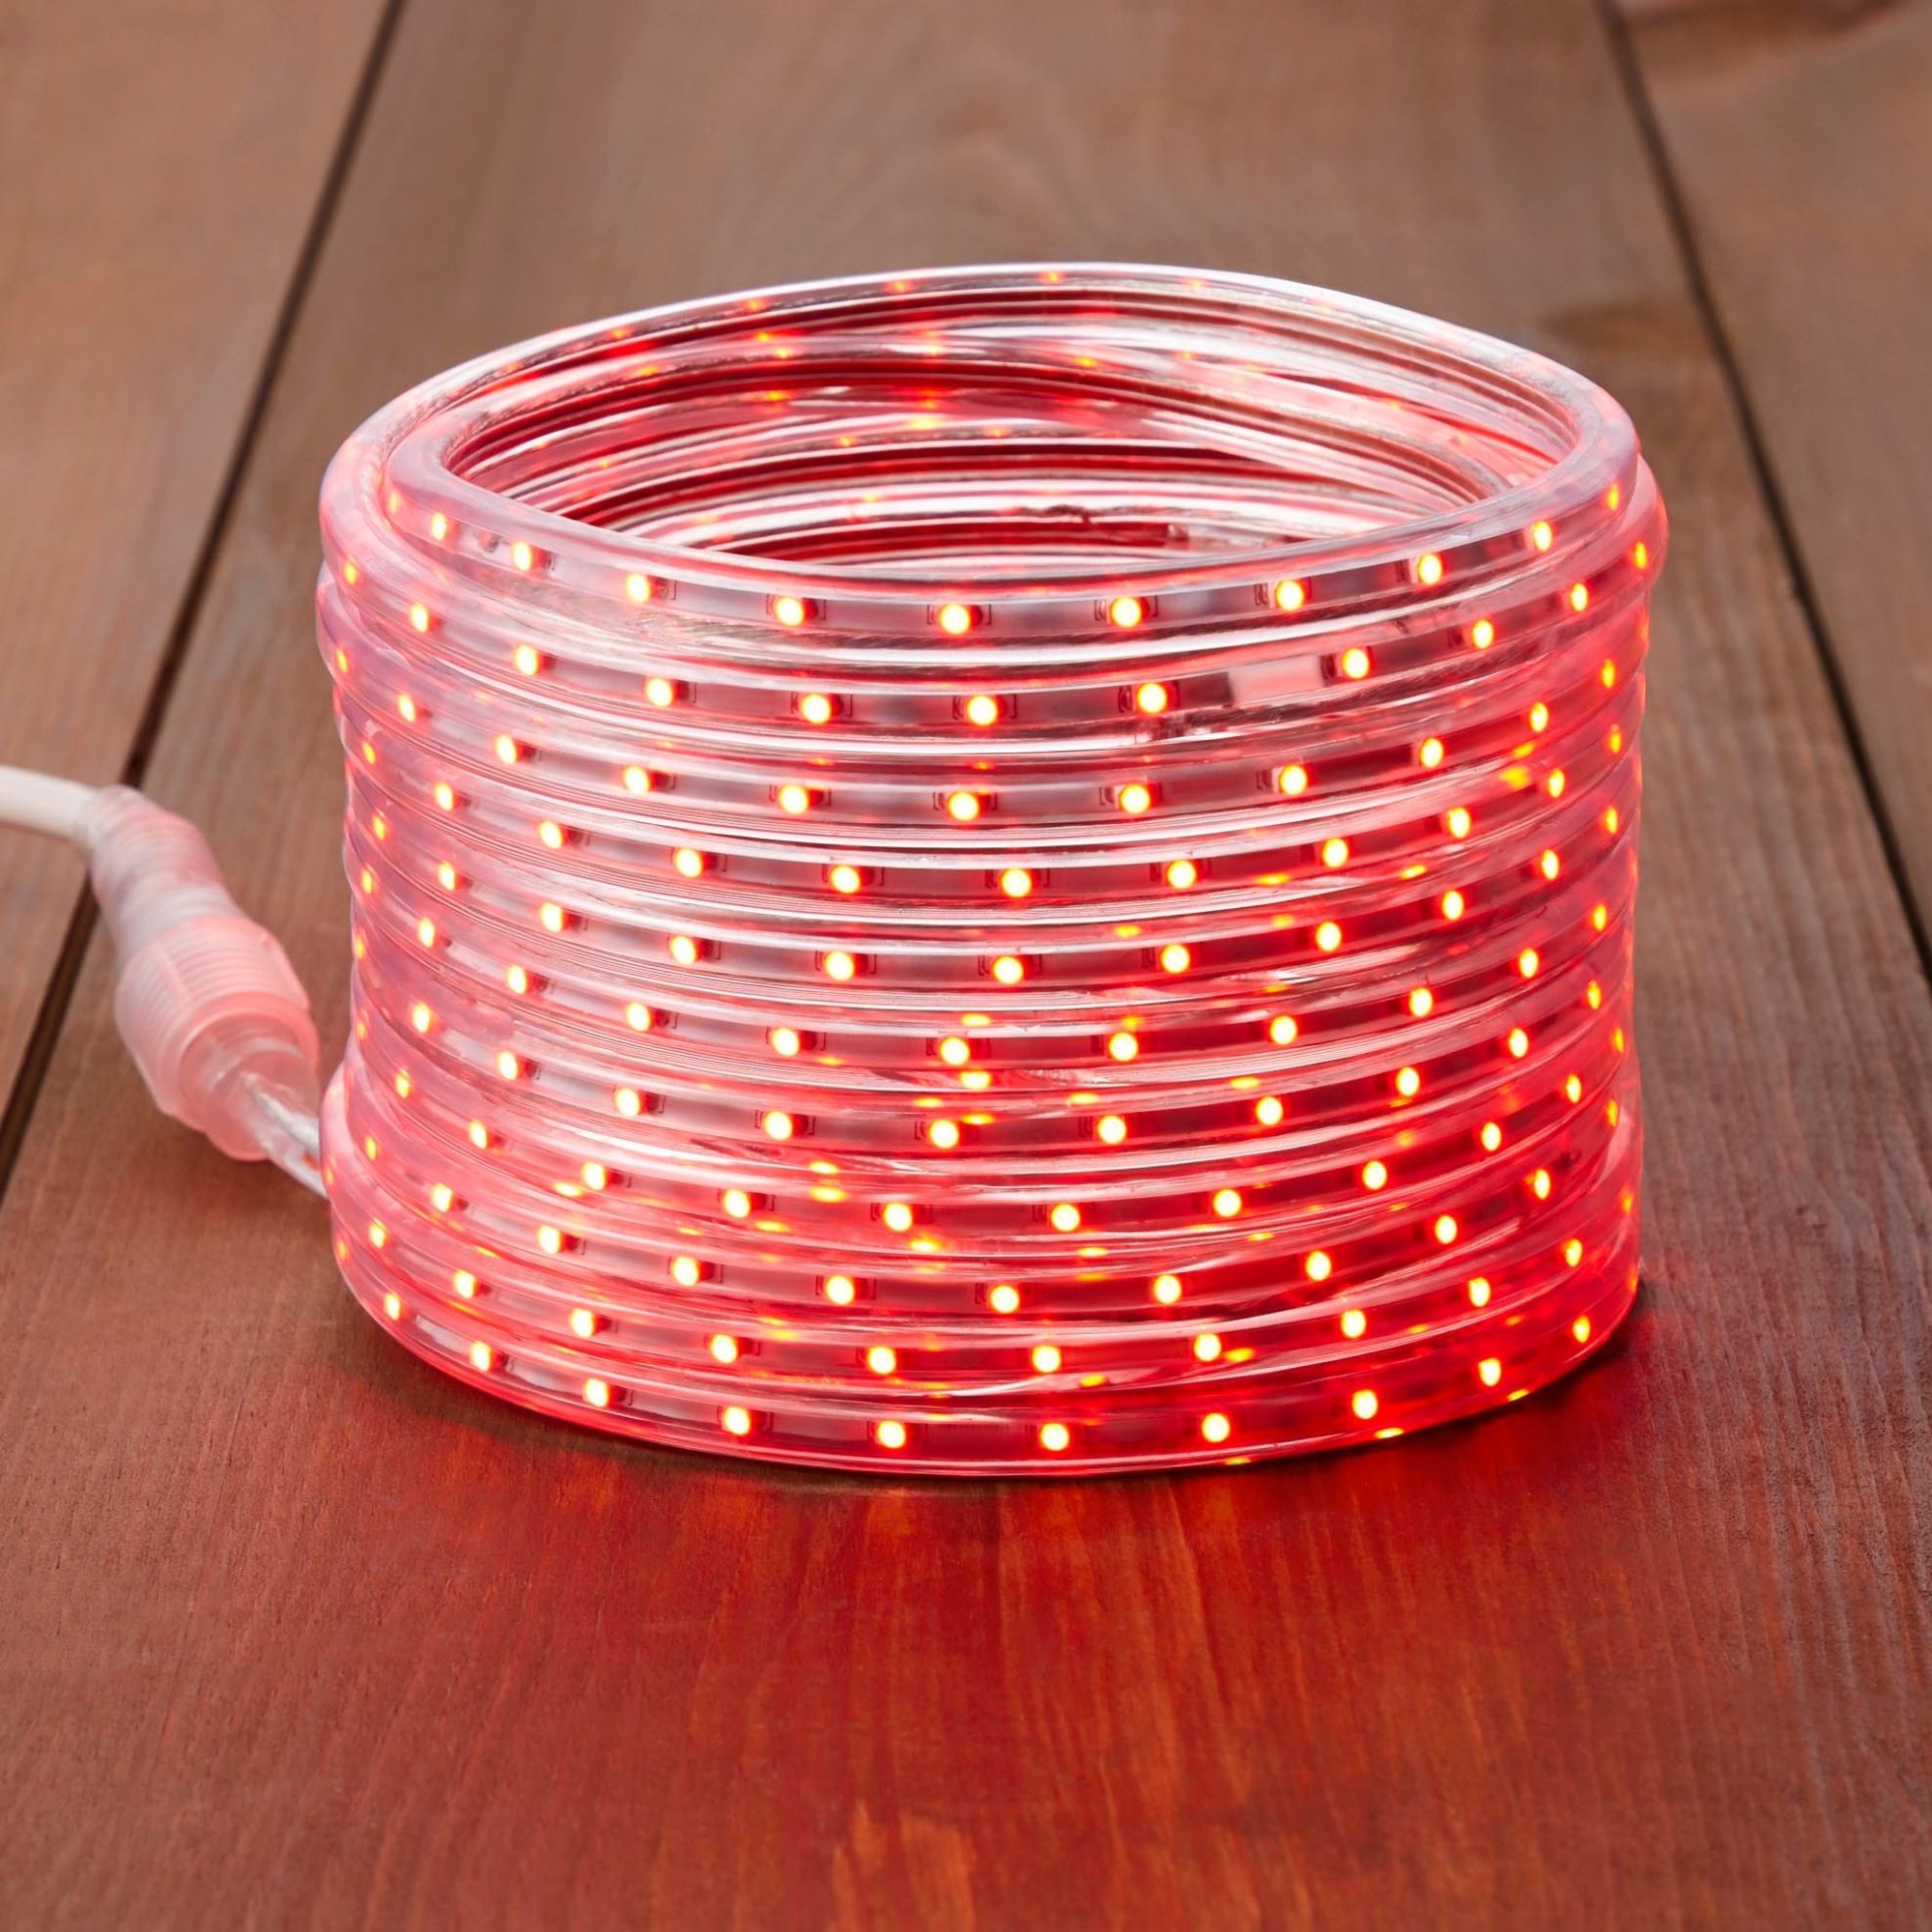 Flexible LED Rope Light - 24-Ft - Red